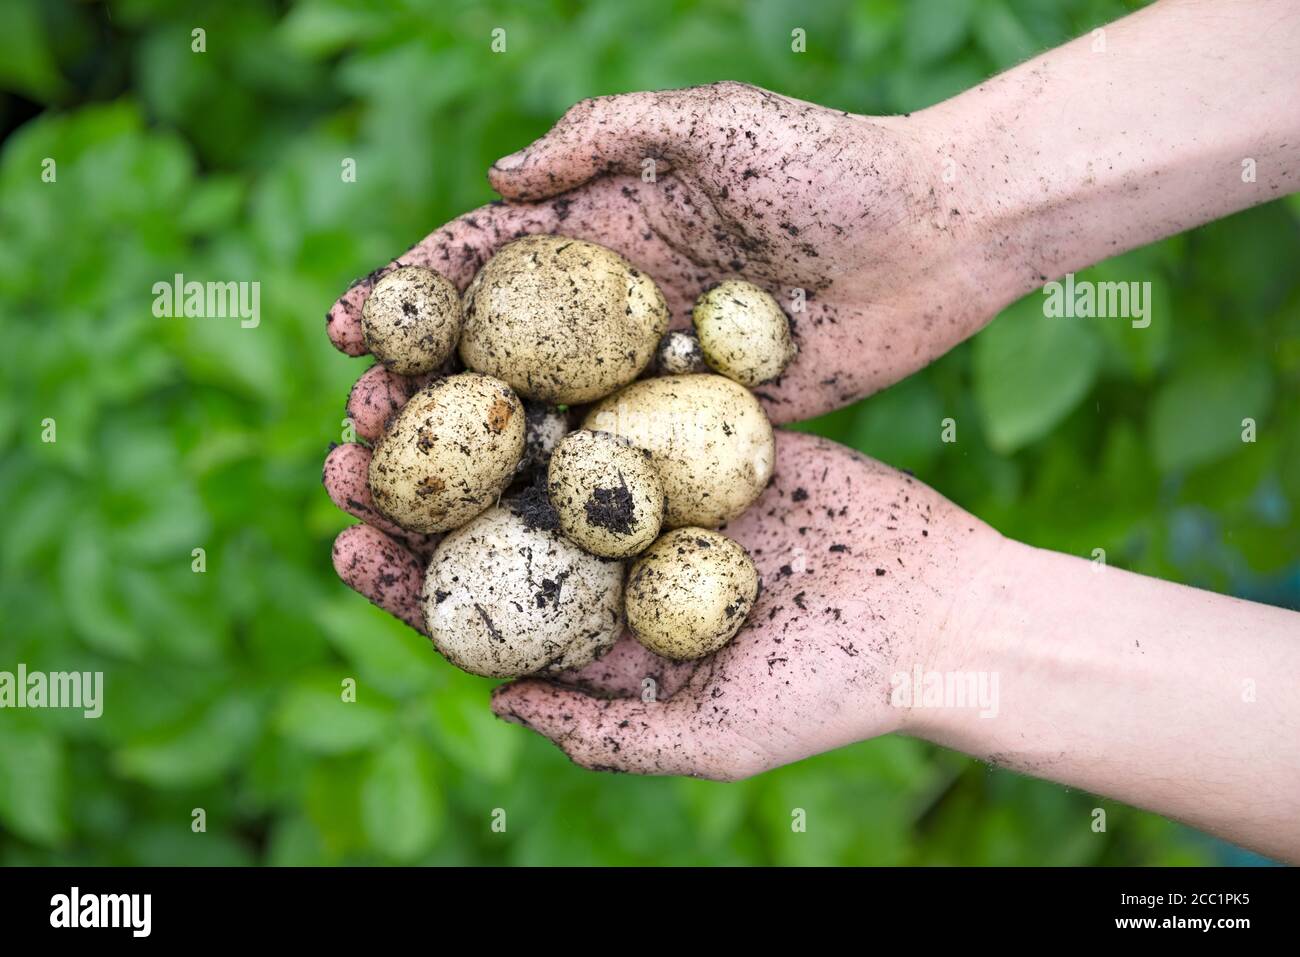 Selbst gepflanzte Saatkartoffeln, die in einem Paar jugendlicher Hände vor den leuchtend grünen Blättern der Kartoffelpflanzen gehalten werden. Overhead-Ansicht. Stockfoto